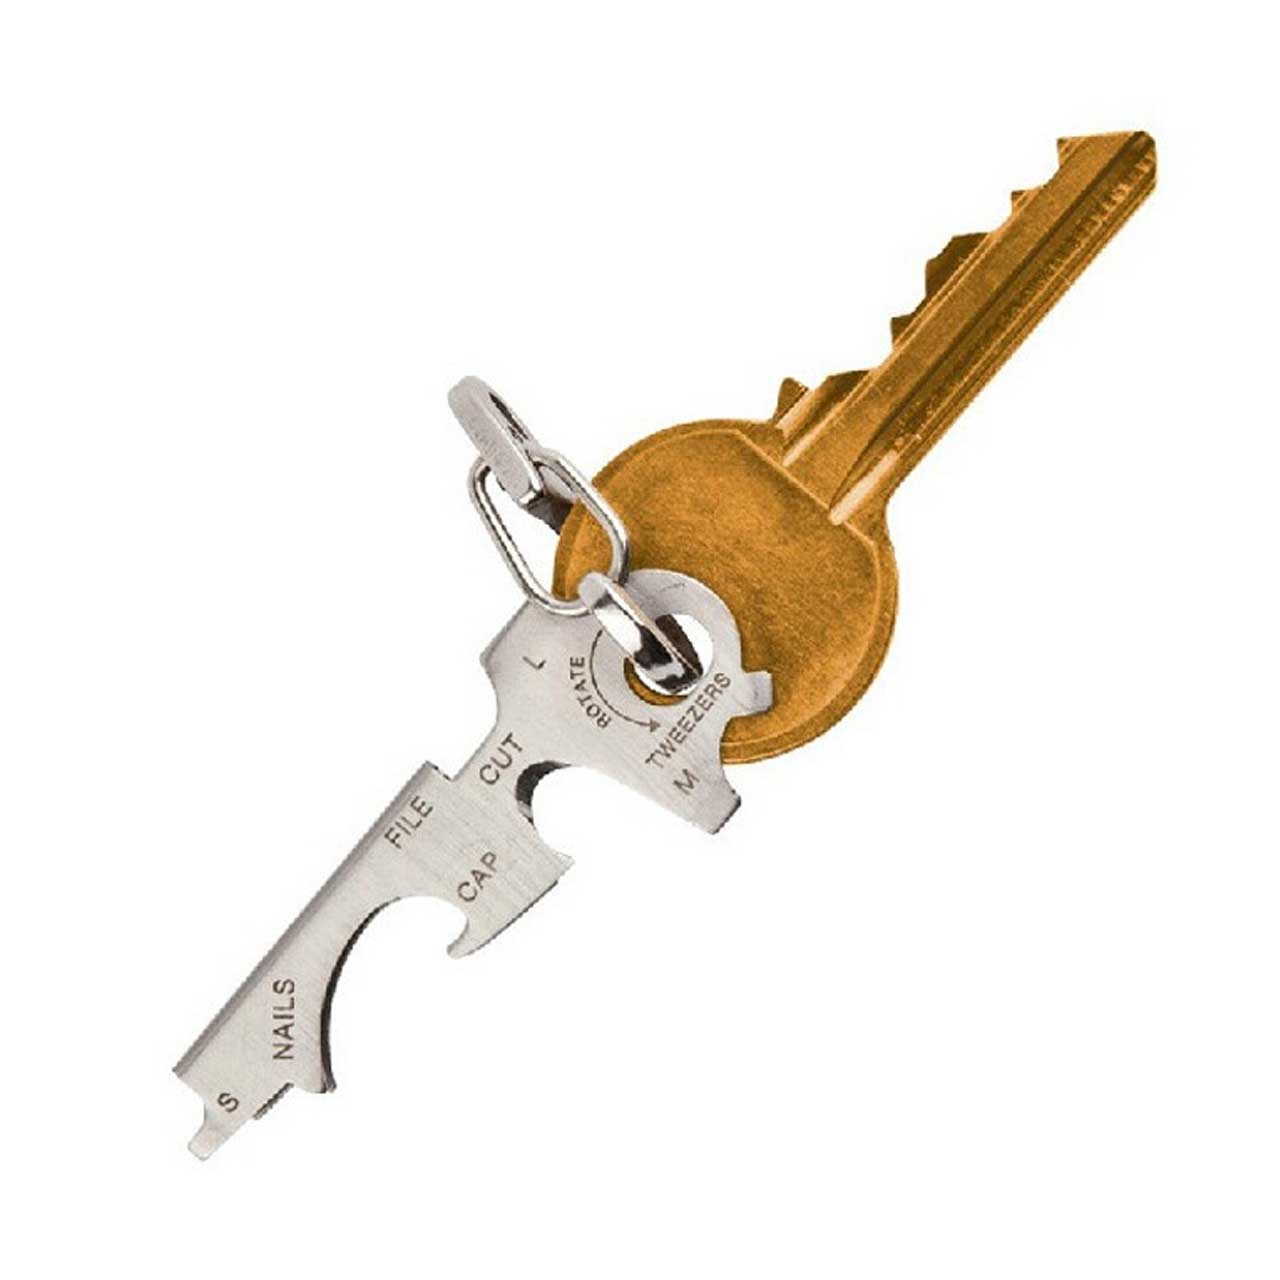 ابزار چند کاره طرح کلید مدل Key 9in1